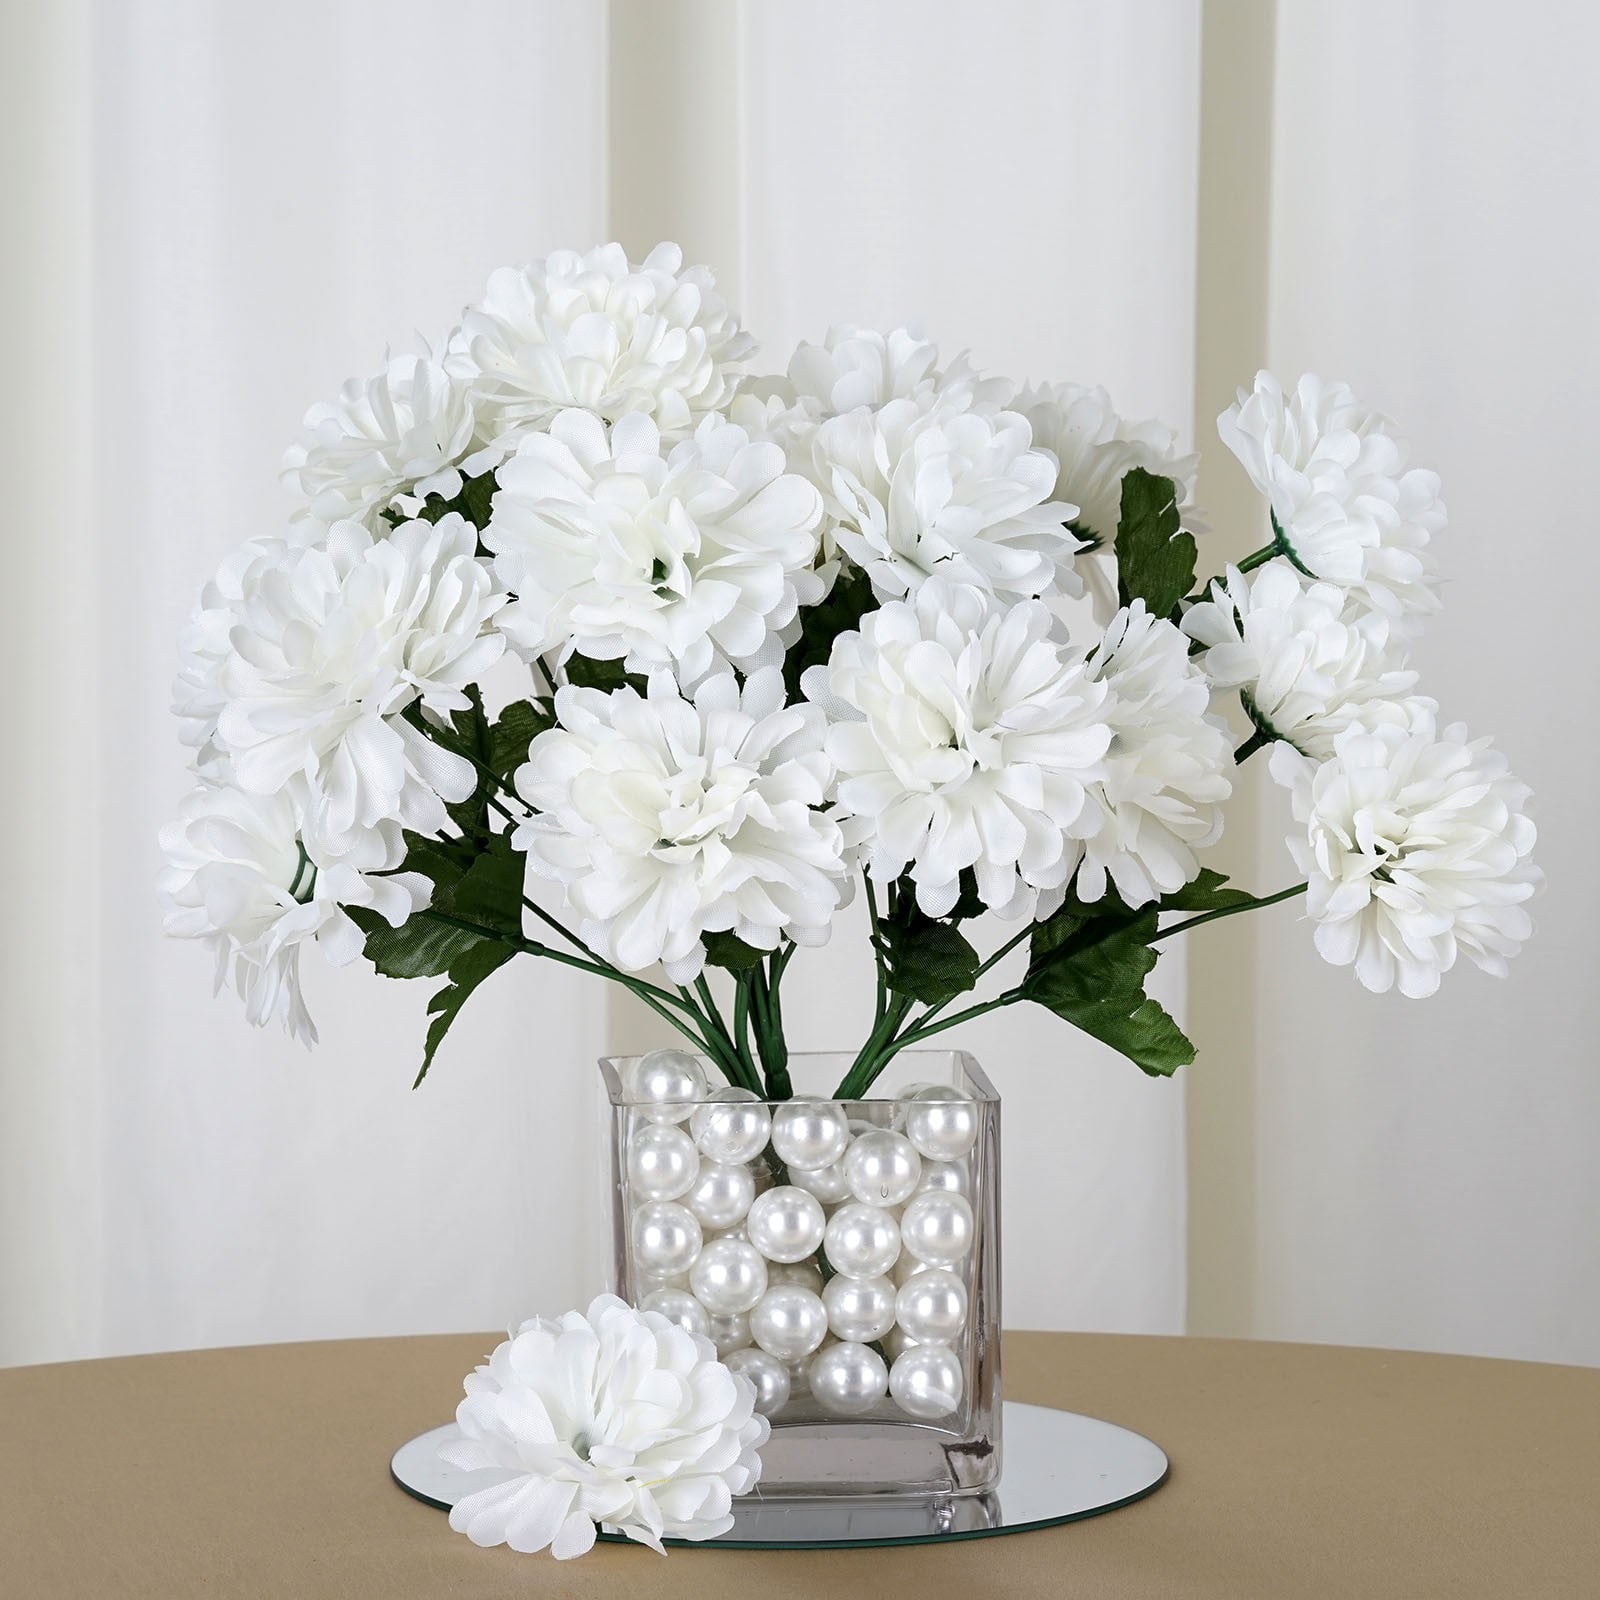 84 Artificial Chrysanthemum Mums Balls for DIY Wedding Bouquets Centerpiece 